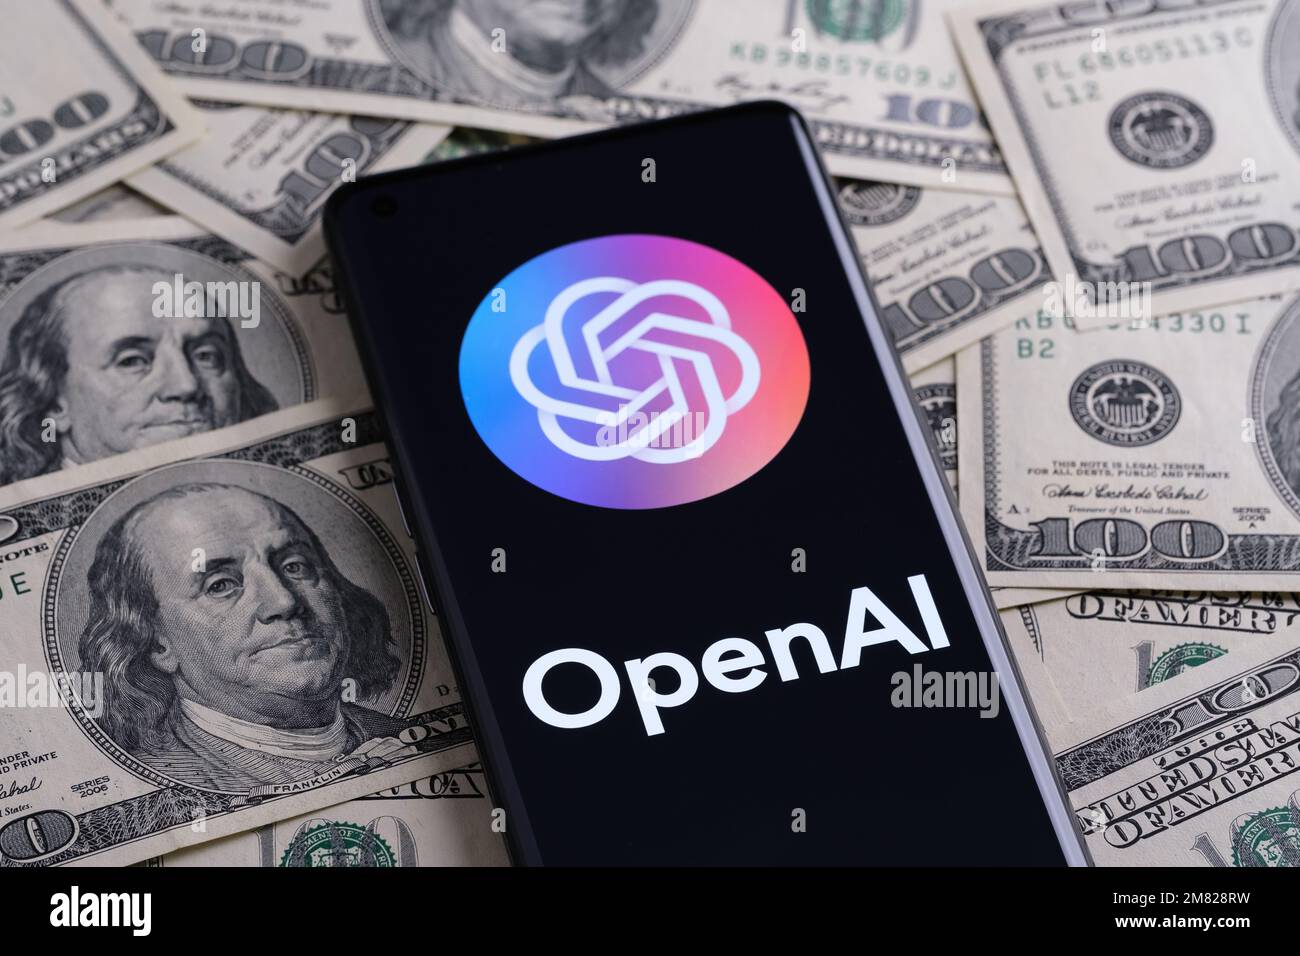 OPENAI wird auf dem Smartphone angezeigt, das auf einem Haufen Bargeld platziert wird. Open AI ist ein Unternehmen, das für seine generative ChatGPT- und DALL-E-AI-Software bekannt ist. Stafford, Stockfoto